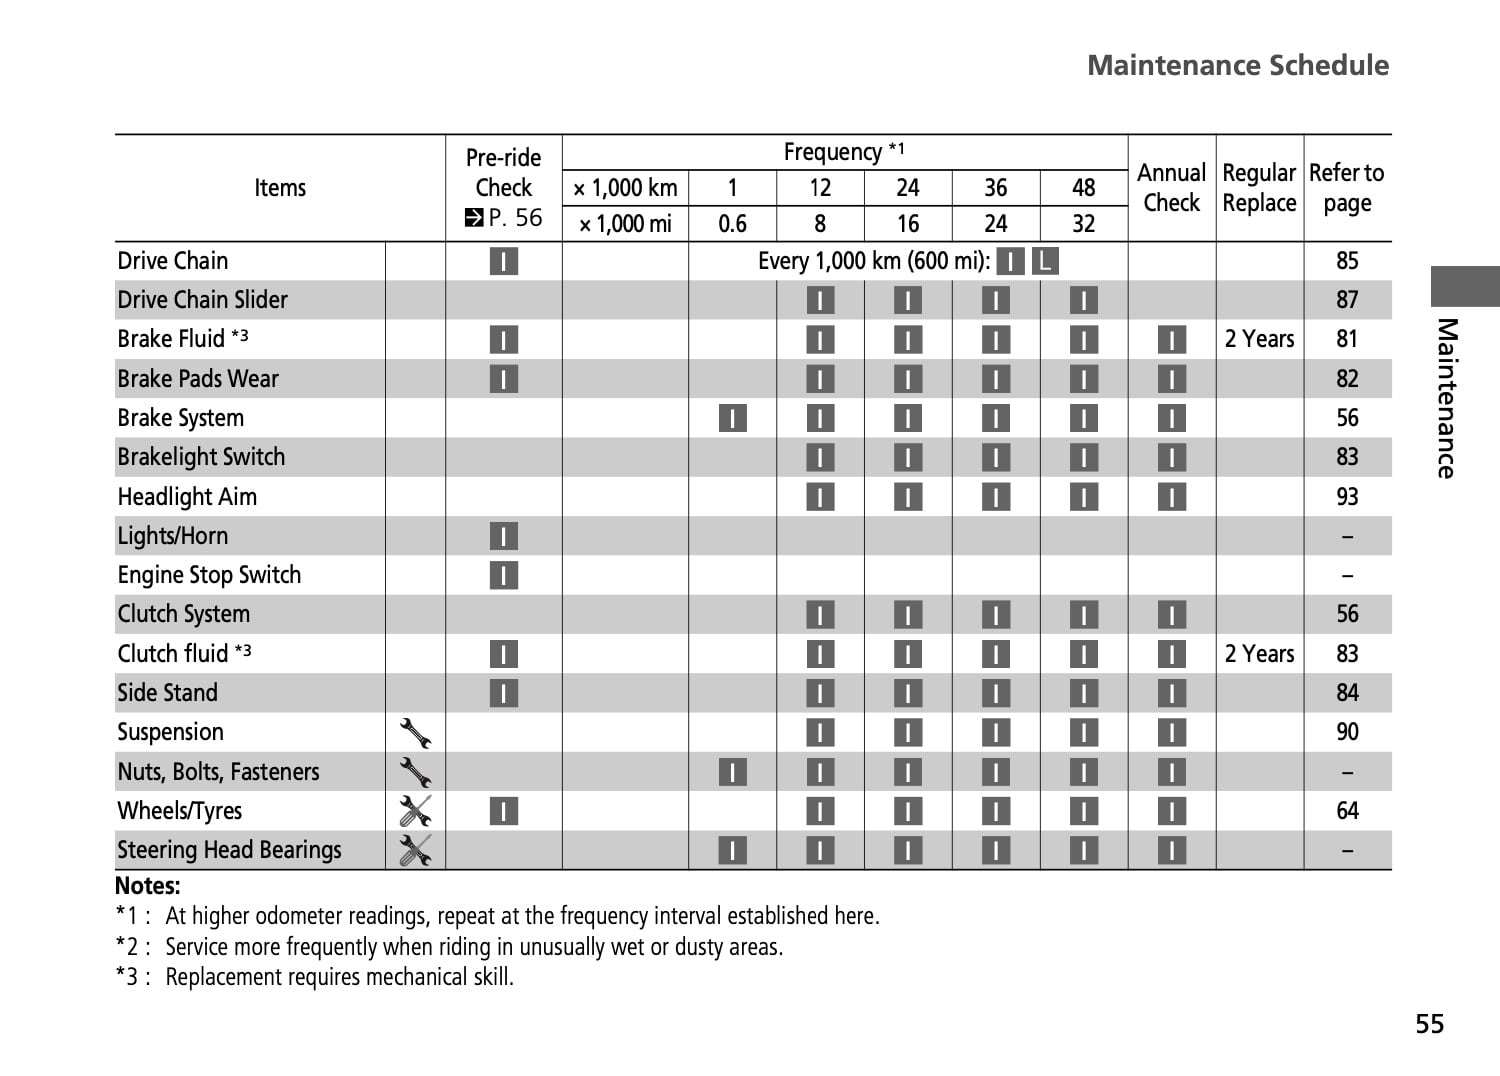 Honda VFR800X Crossrunner 2nd gen 2015 Maintenance Schedule Screenshot from manual 3